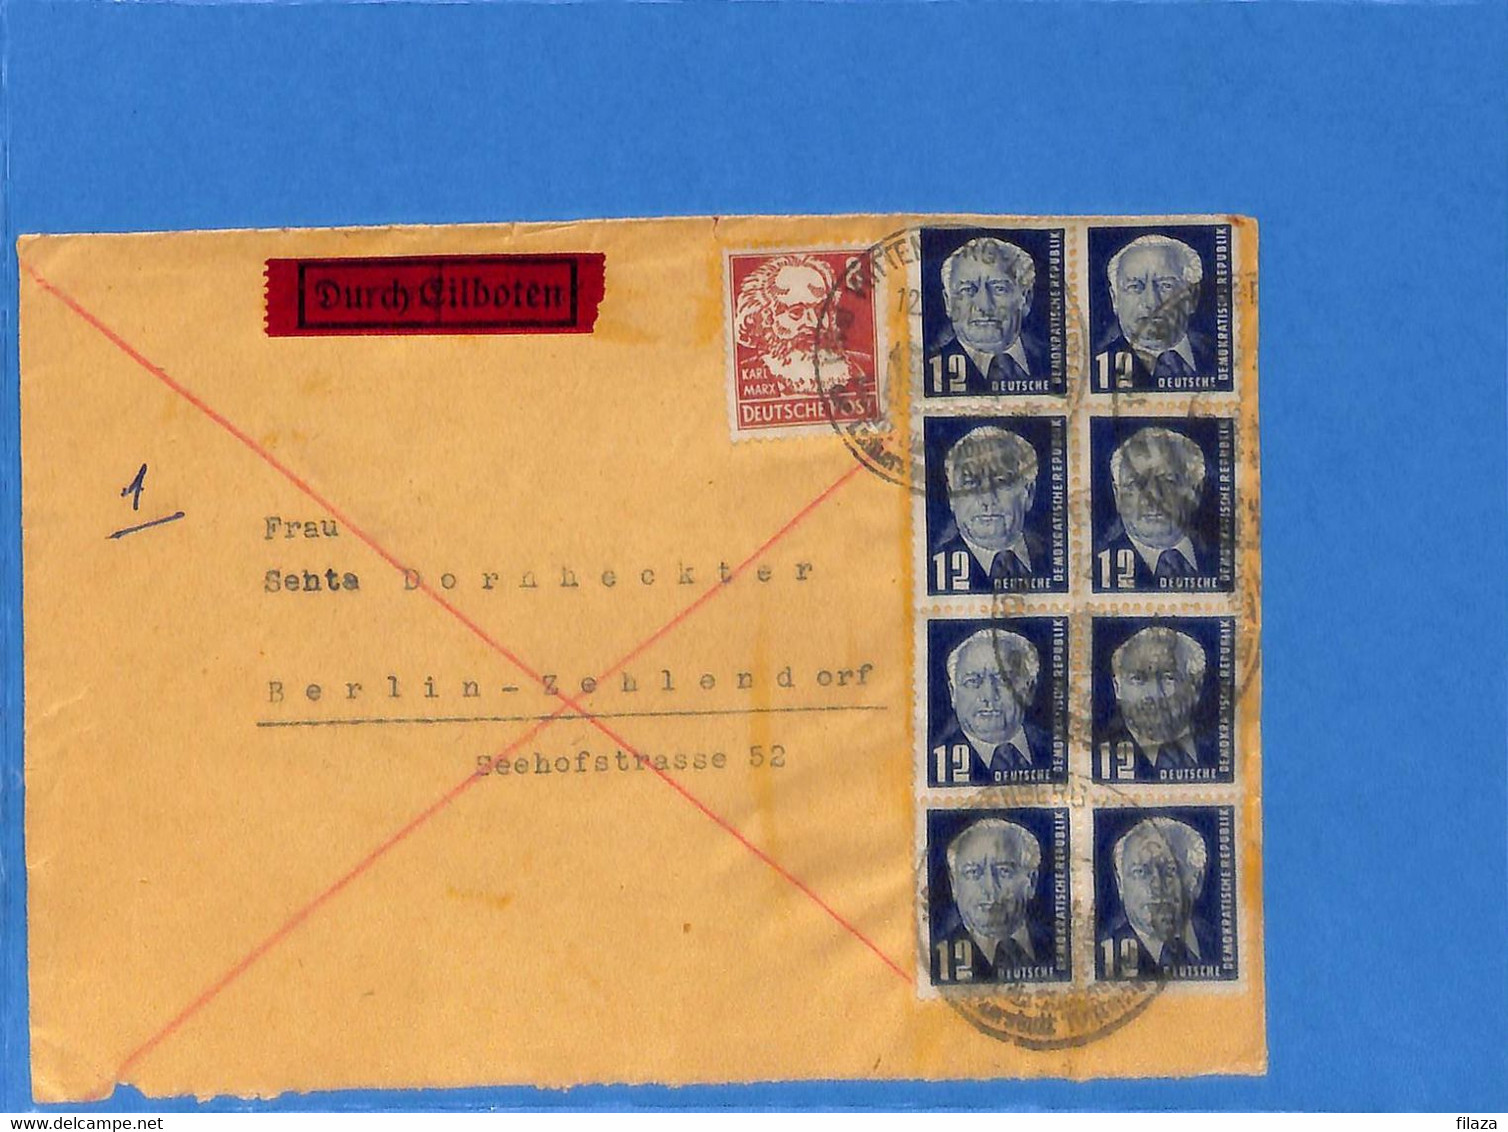 Allemagne Zone Soviétique 1951 Lettre Durch Eilboten De Wittenberg (G10404) - Covers & Documents